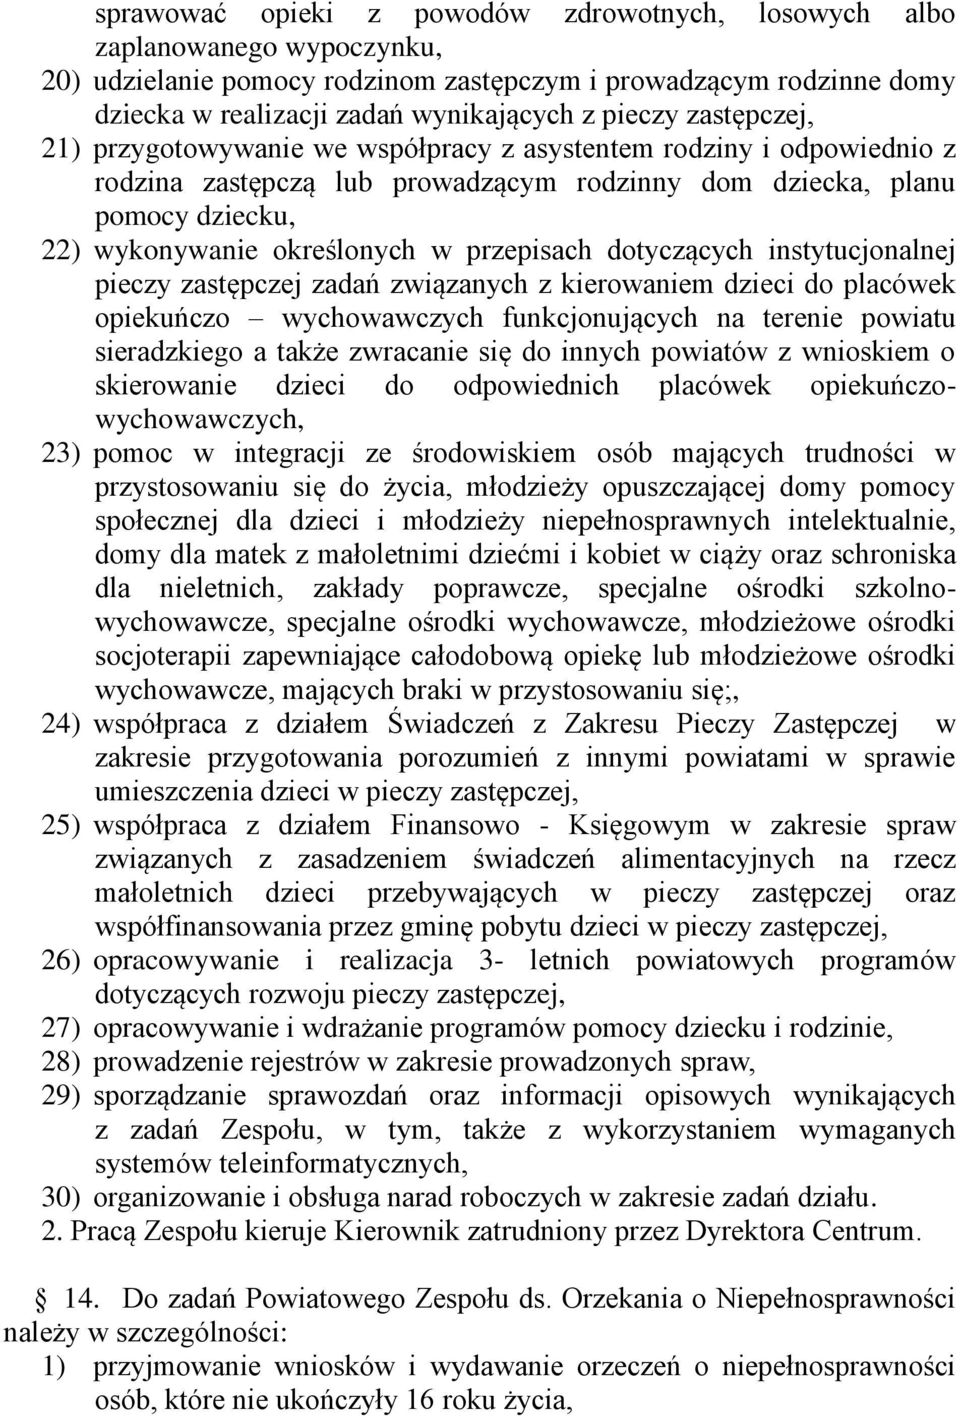 przepisach dotyczących instytucjonalnej pieczy zastępczej zadań związanych z kierowaniem dzieci do placówek opiekuńczo wychowawczych funkcjonujących na terenie powiatu sieradzkiego a także zwracanie